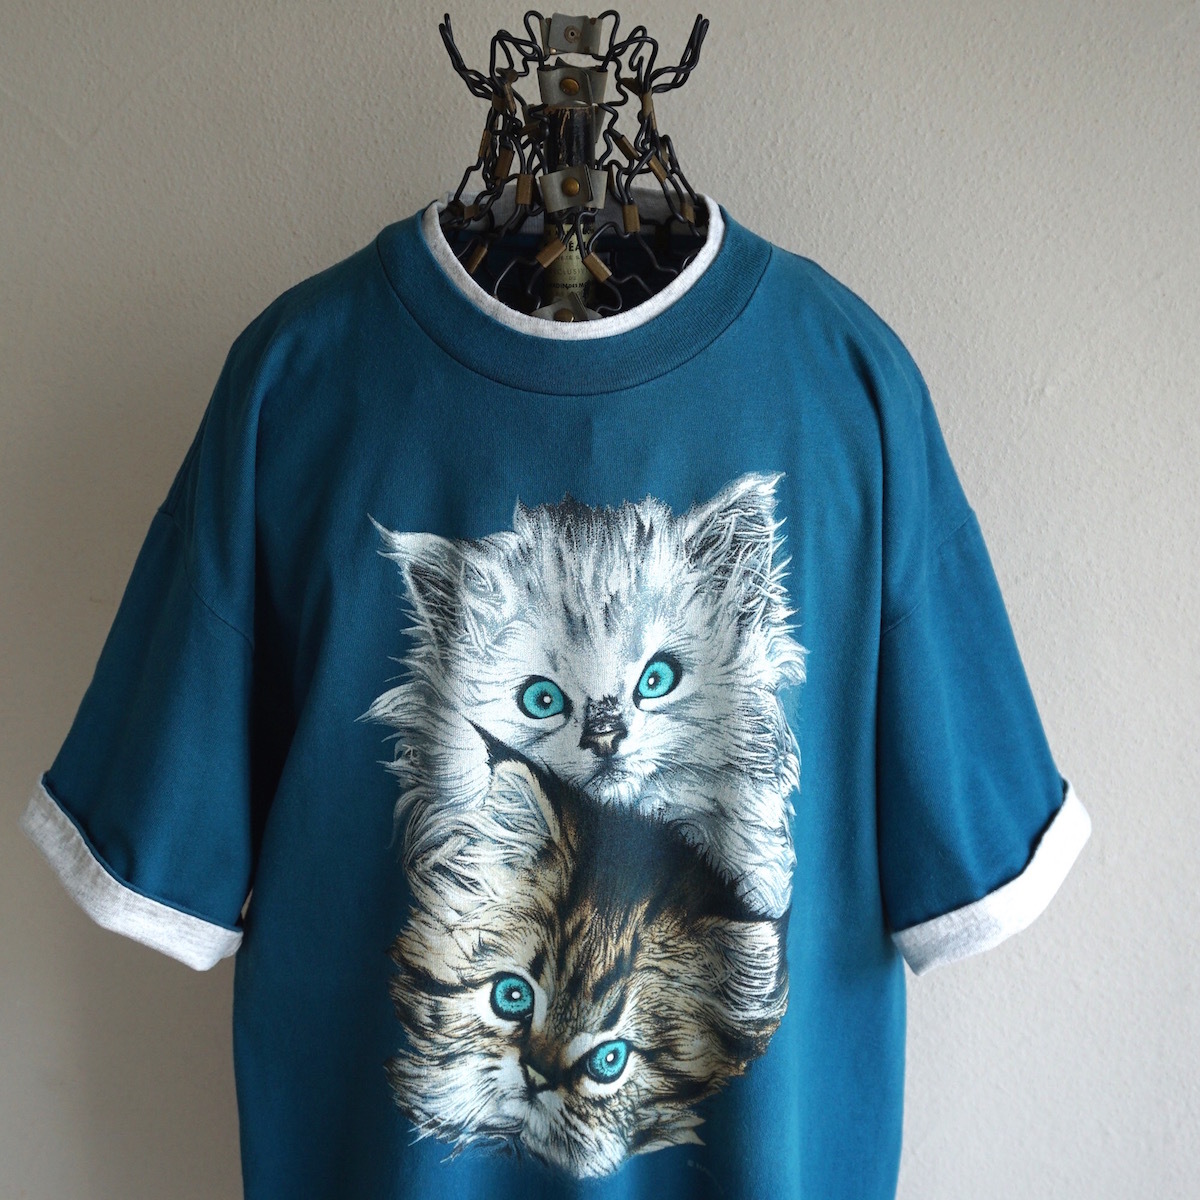 1990s ヴィンテージ USA製 SIGNAL SPORTS ラグドール アニマルプリント Tシャツ L ティール 青緑 ネコ 猫 キャット アメリカ 海外 古着